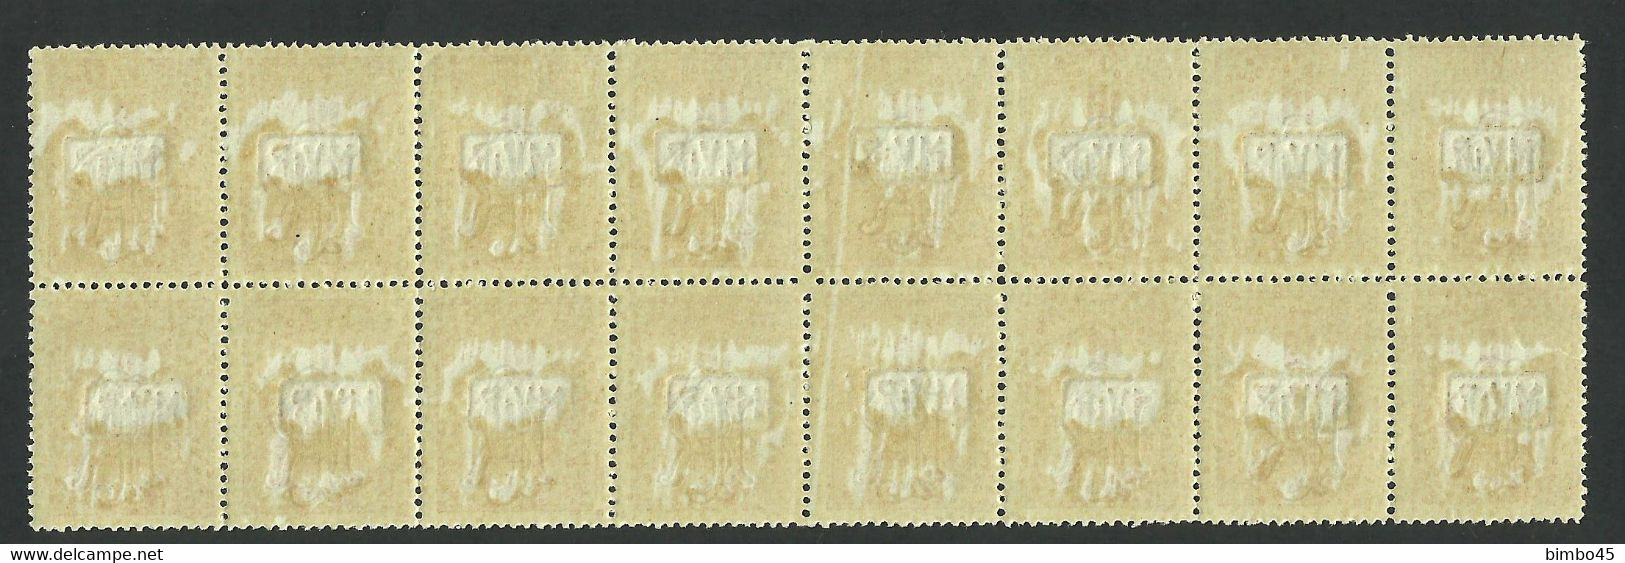 Error / Variety  -- Romania 1918  MNH -- Revenue Stamp / German Occupation  / M.V.i.R. - Steuermarken